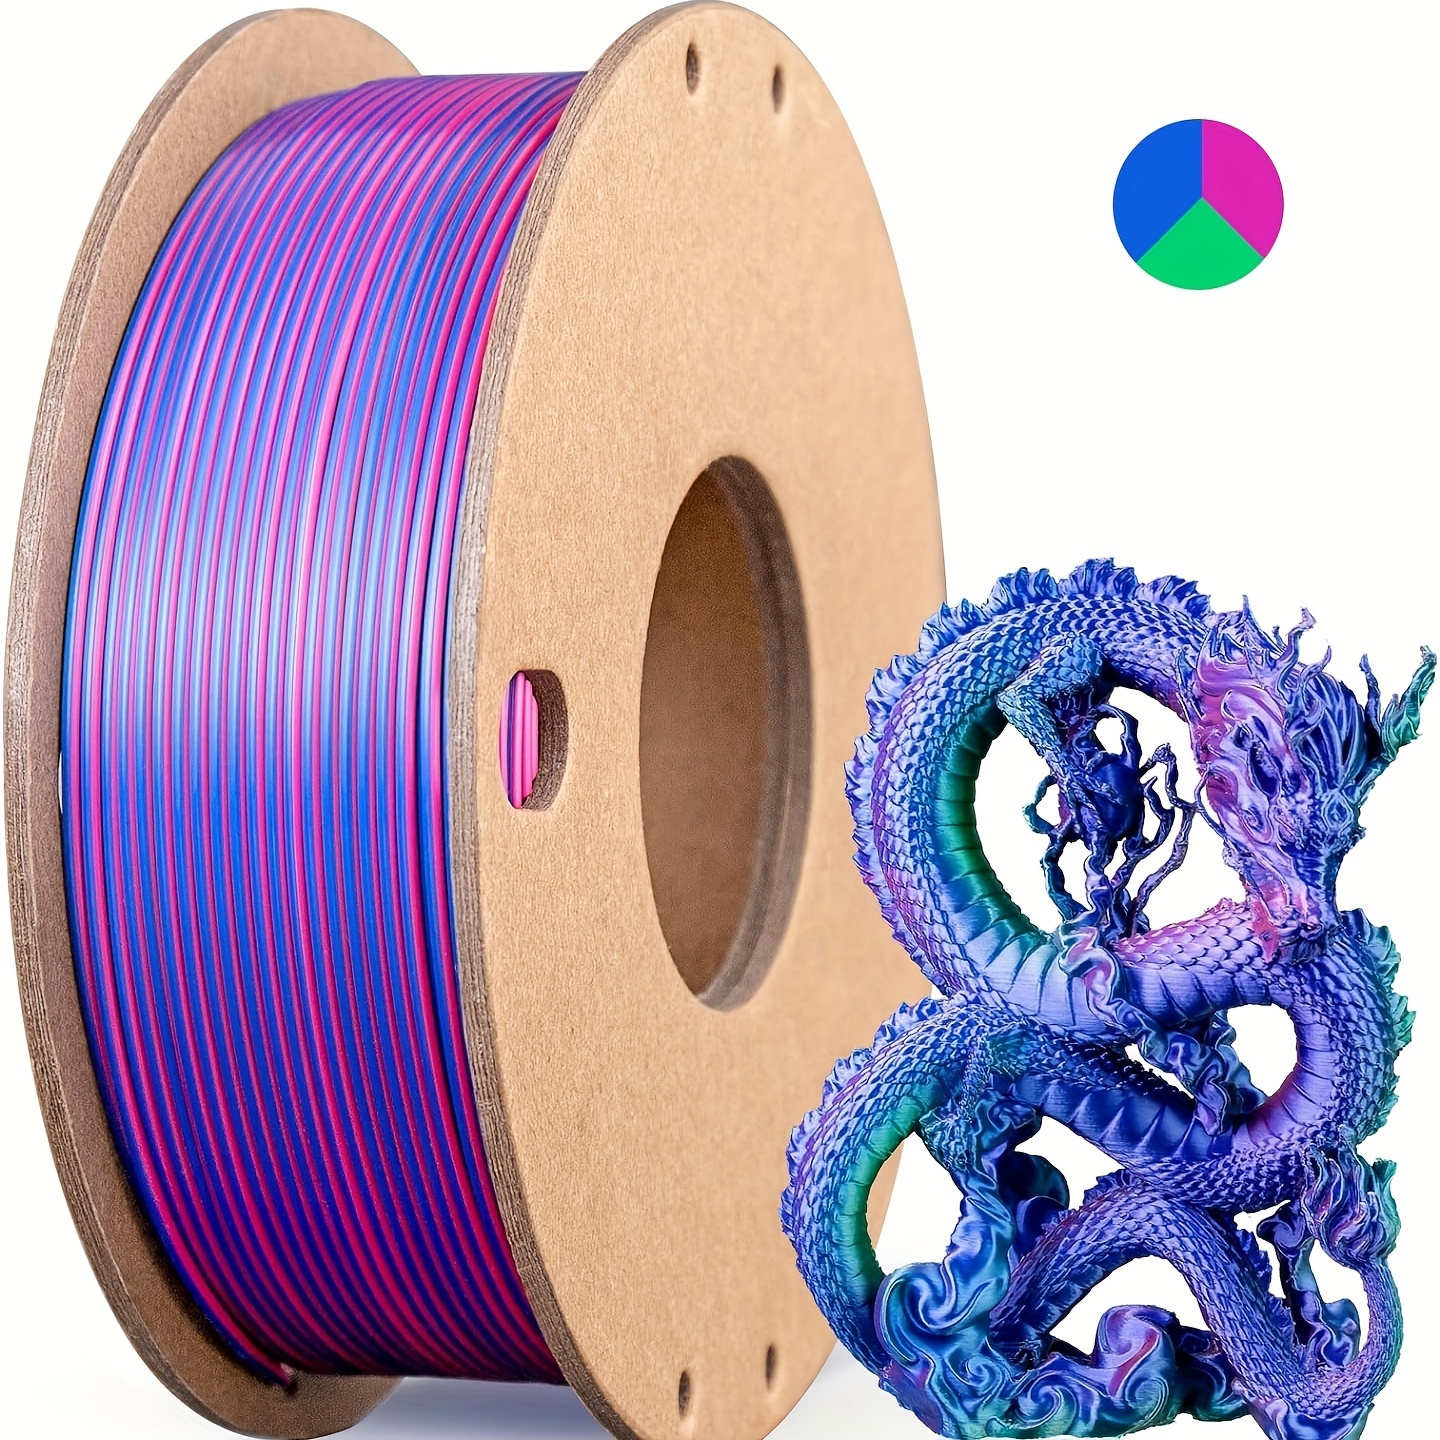 

Bobine 3 en 1 pour imprimante 3D de 250g de filament PLA, soie multicolore de 1,75mm (rose rouge, bleu foncé, vert) pour une impression 3D fluide